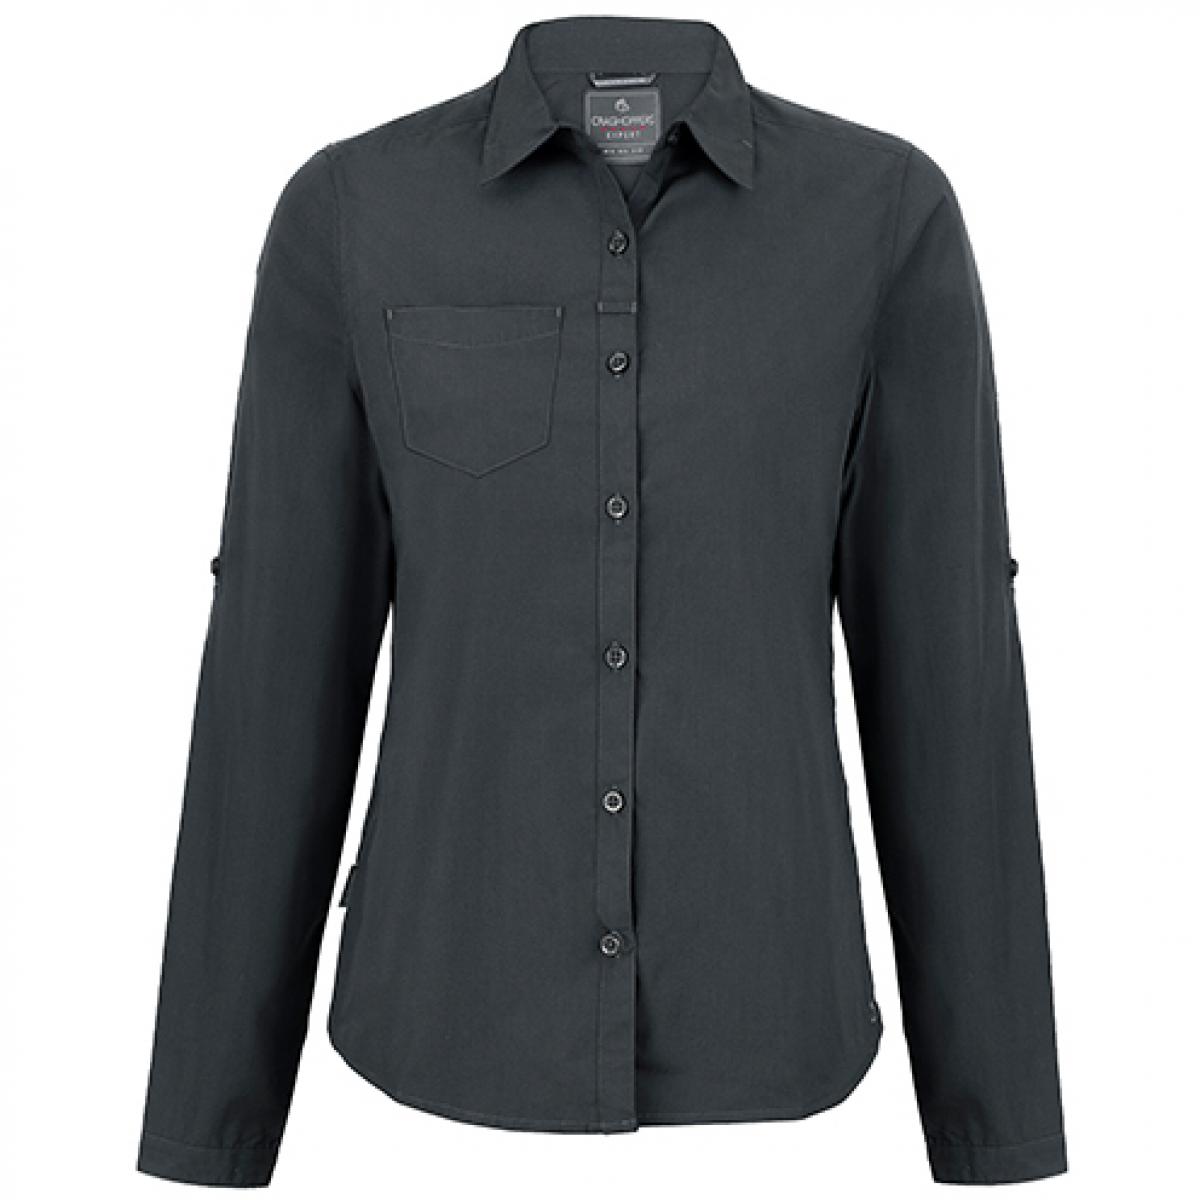 Hersteller: Craghoppers Expert Herstellernummer: CES002 Artikelbezeichnung: Expert Womens Kiwi Long Sleeved Shirt Farbe: Carbon Grey